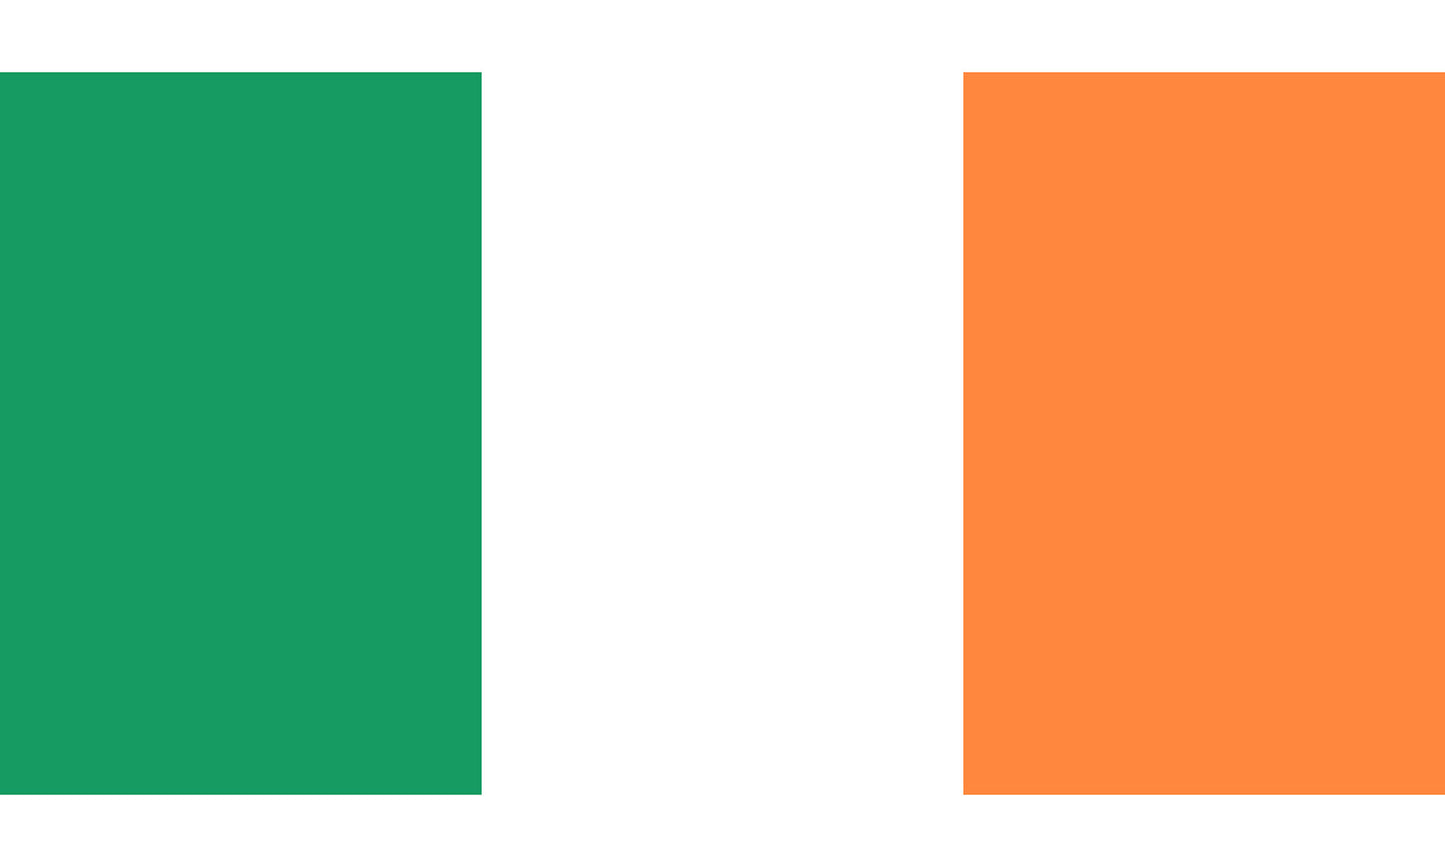 INR-IRE-15x22-2 - государственный флаг Ирландии, размер: 15х22 см, материал: атлас. Печать с двух сторон. Подставка и шток приобретаются отдельно